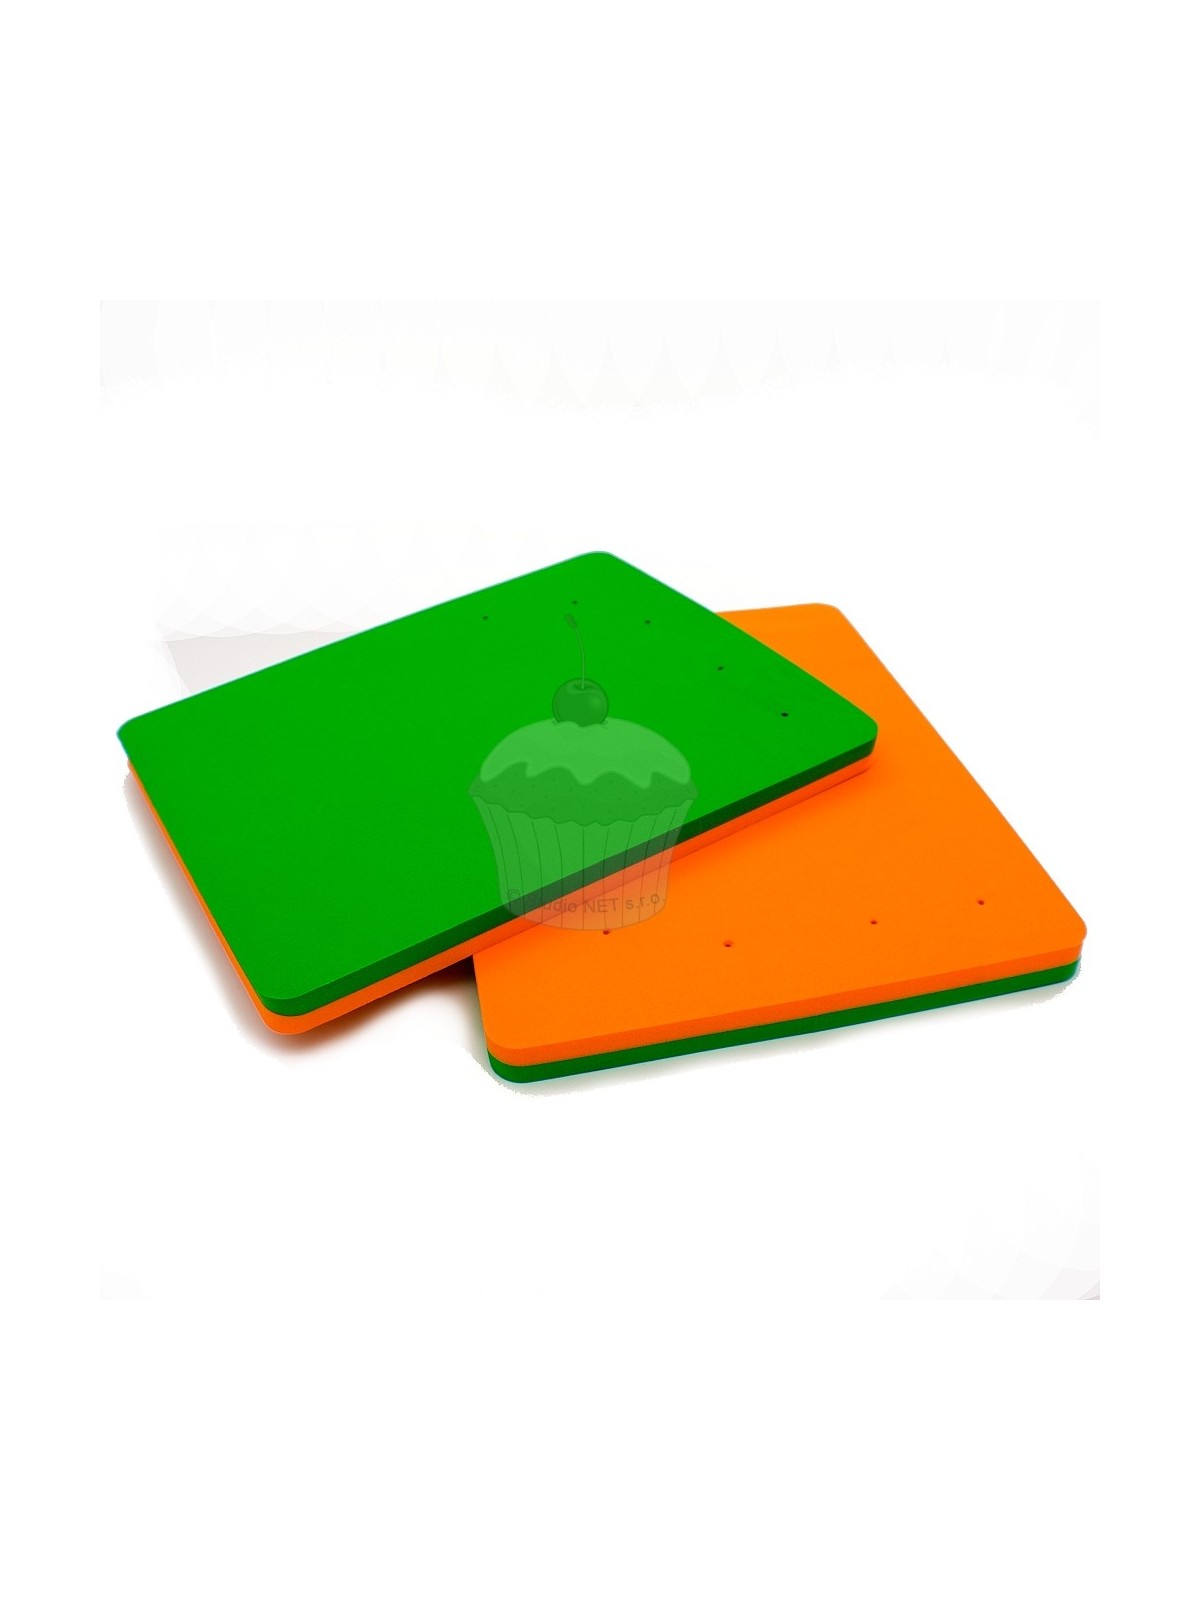 Modellierplatte - orange - grün